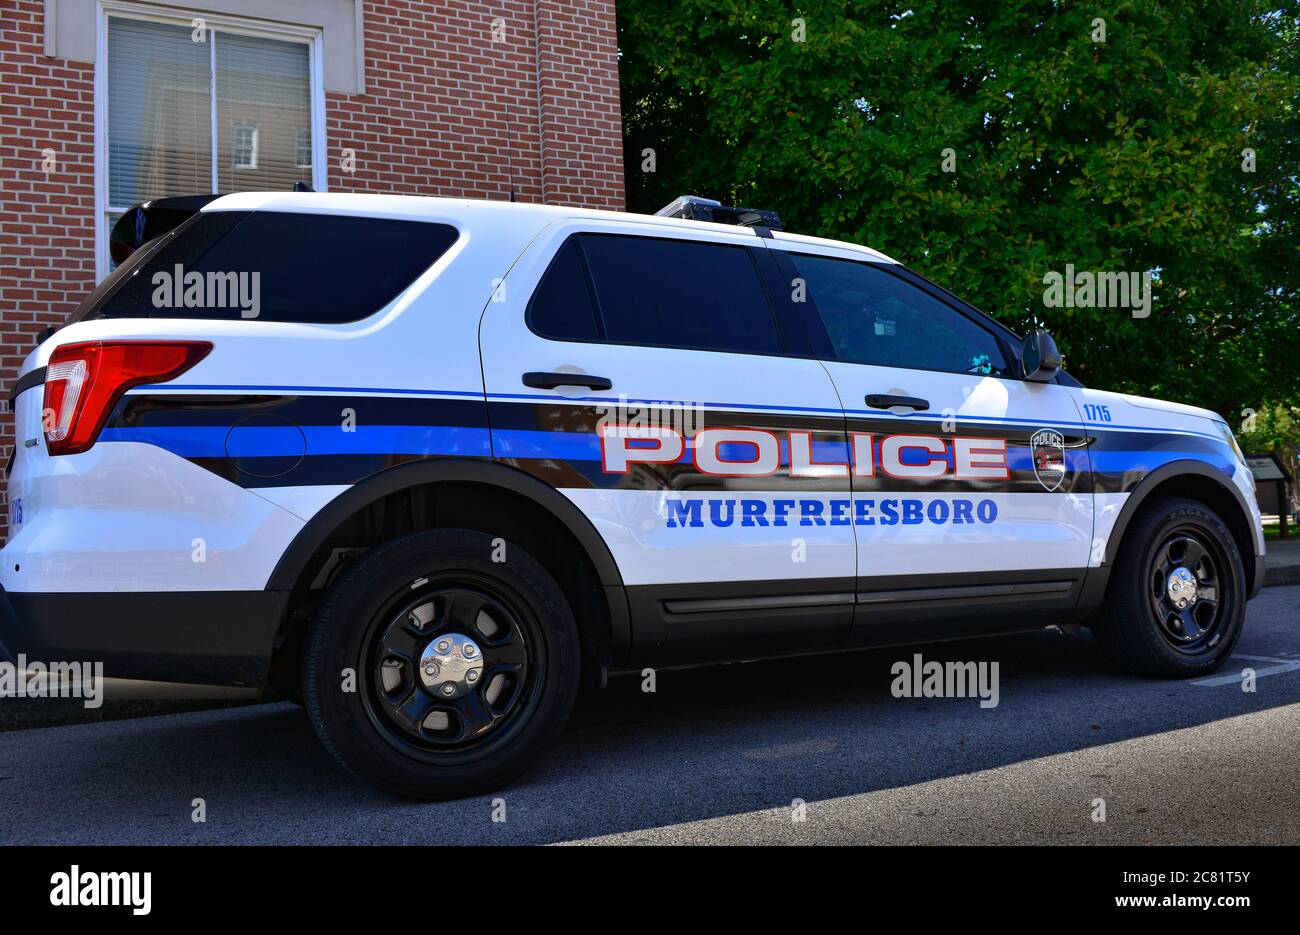 Una vettura di pattuglia SUV della polizia del Tennessee di Murfreesboro parcheggiata, con la segnaletica grafica sul veicolo in blu, nero e rosso a Murfreesboro, Tennessee Foto Stock